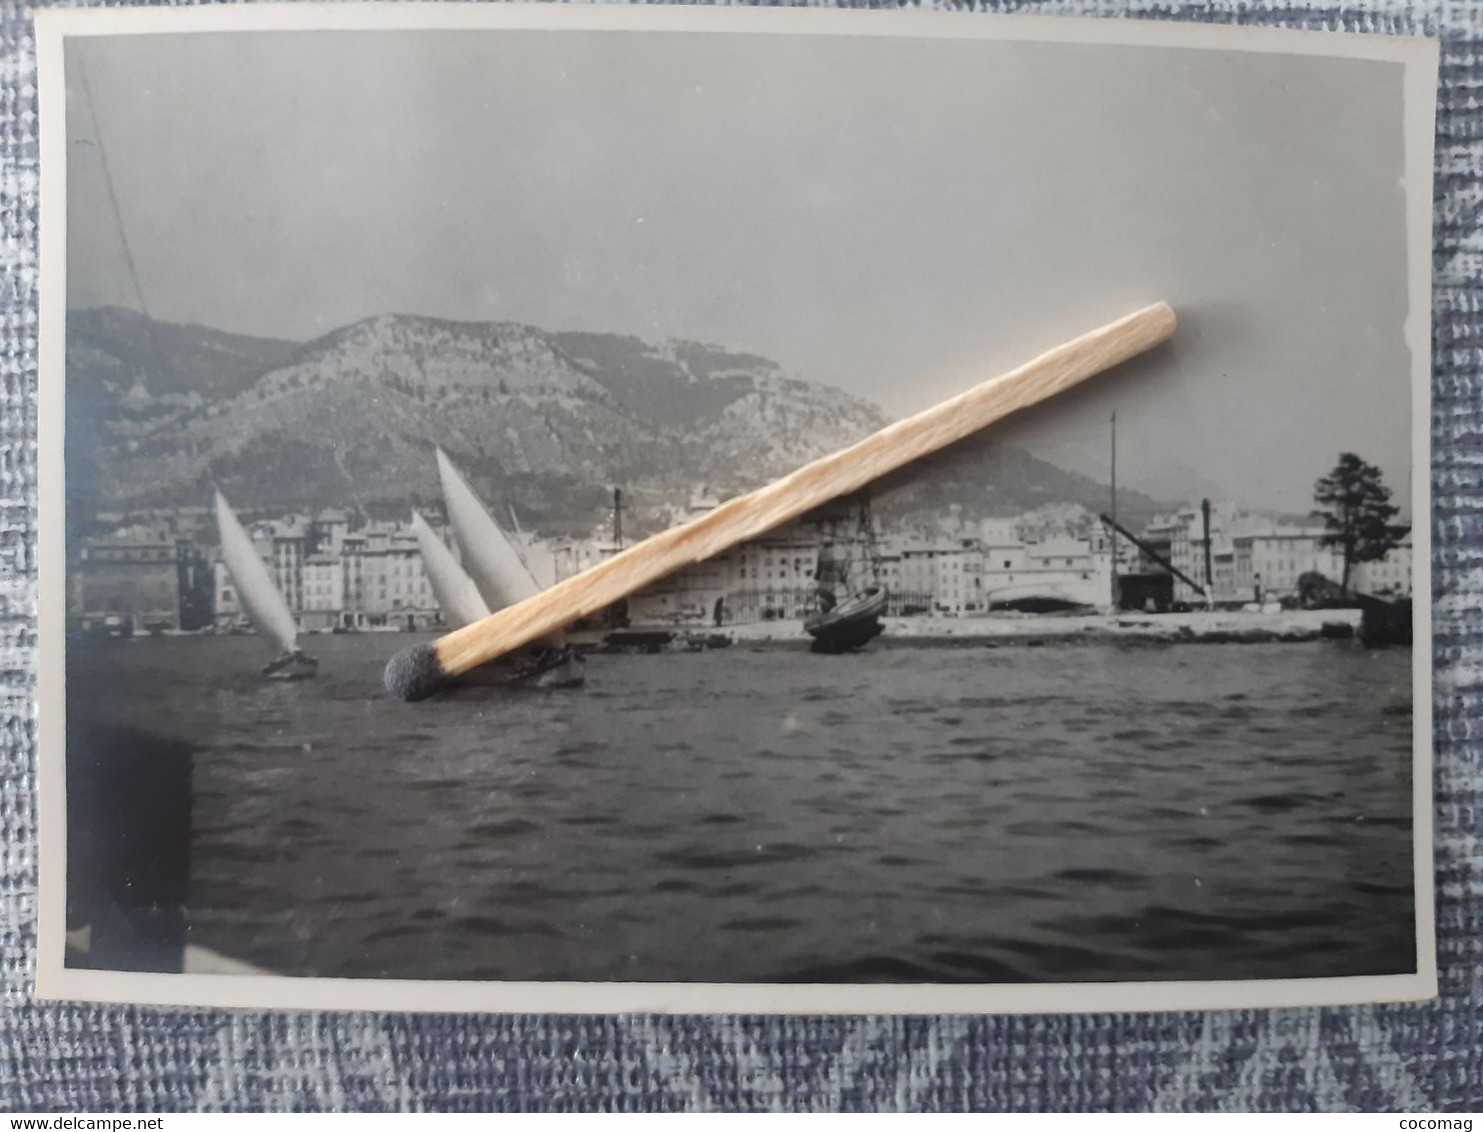 83 TOULON  PHOTO ORIGINALE 27 JUIN 1948 16 SABORDAGE DE LA FLOTTE FRANCAISE  CALE SECHE BATEAU MILITARIA - Boats